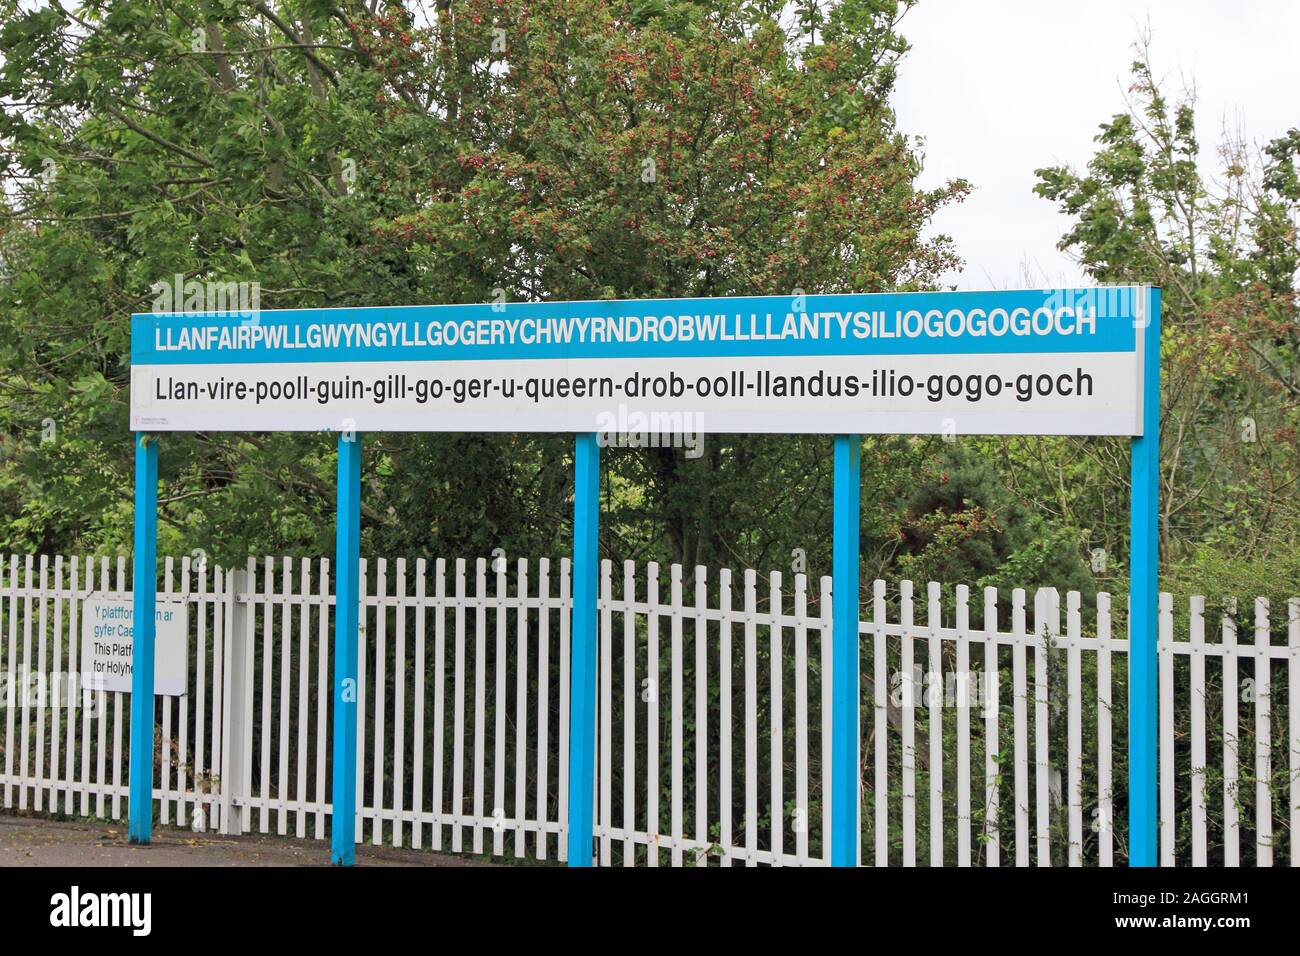 Llanfairpwllgwyngyllgogerychwyrndrobwllllantysiliogogoch sign at railway station Stock Photo